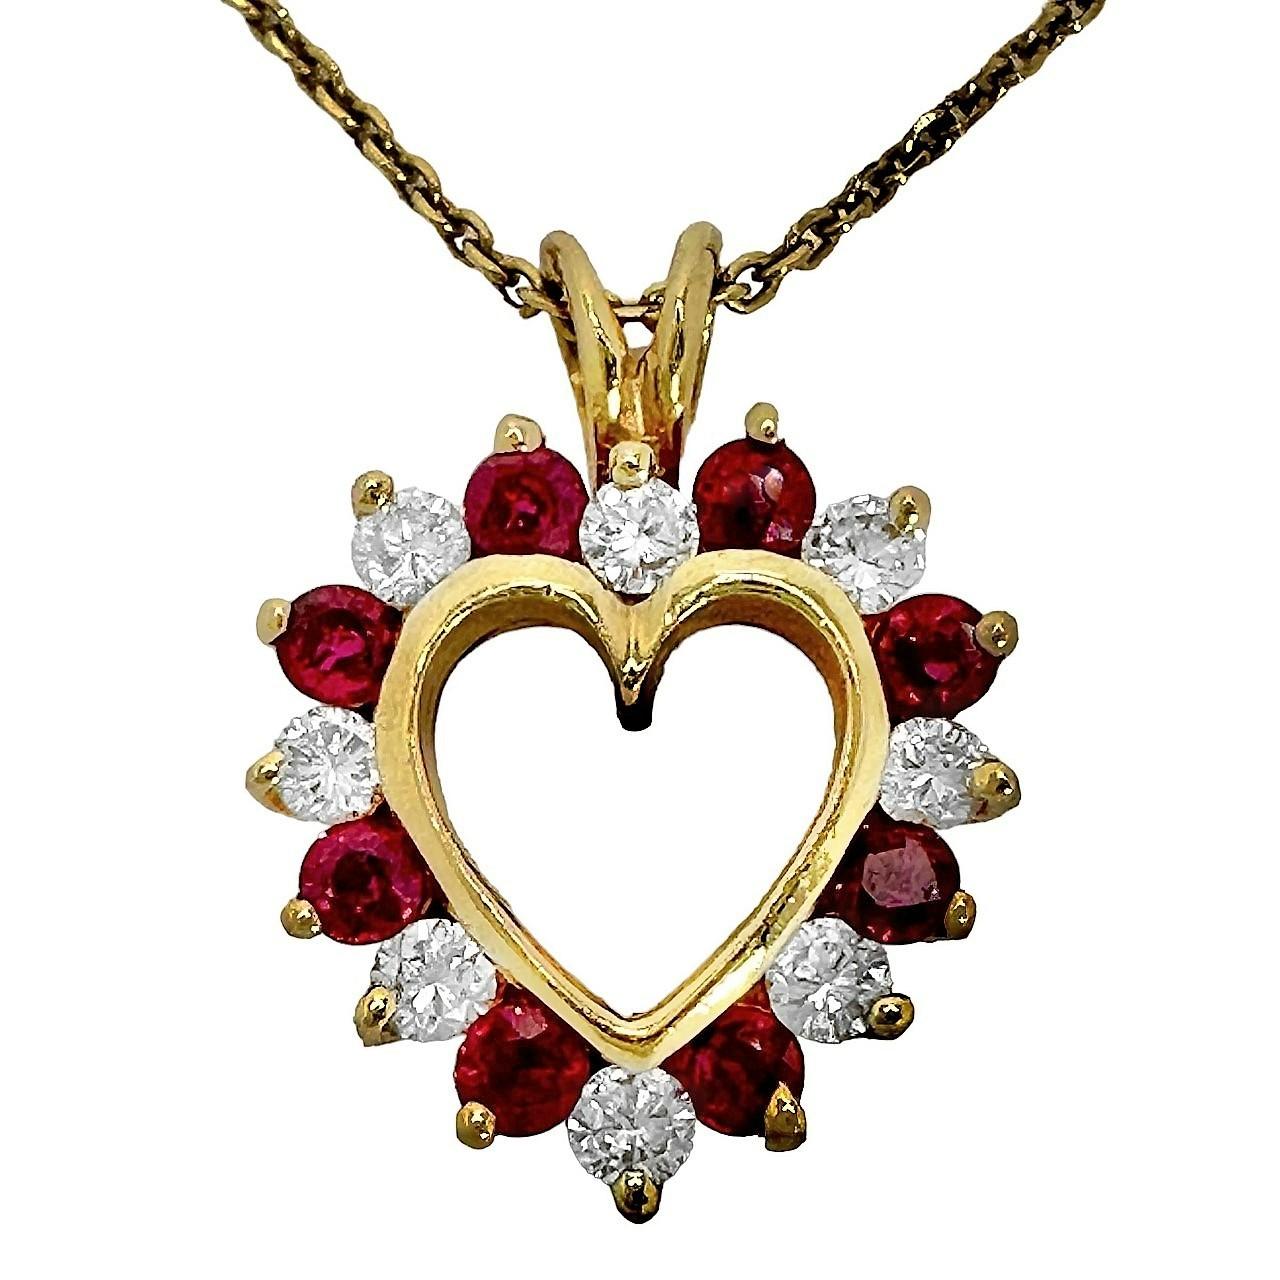  Petit pendentif moderne en forme de cœur en or avec rubis et diamants